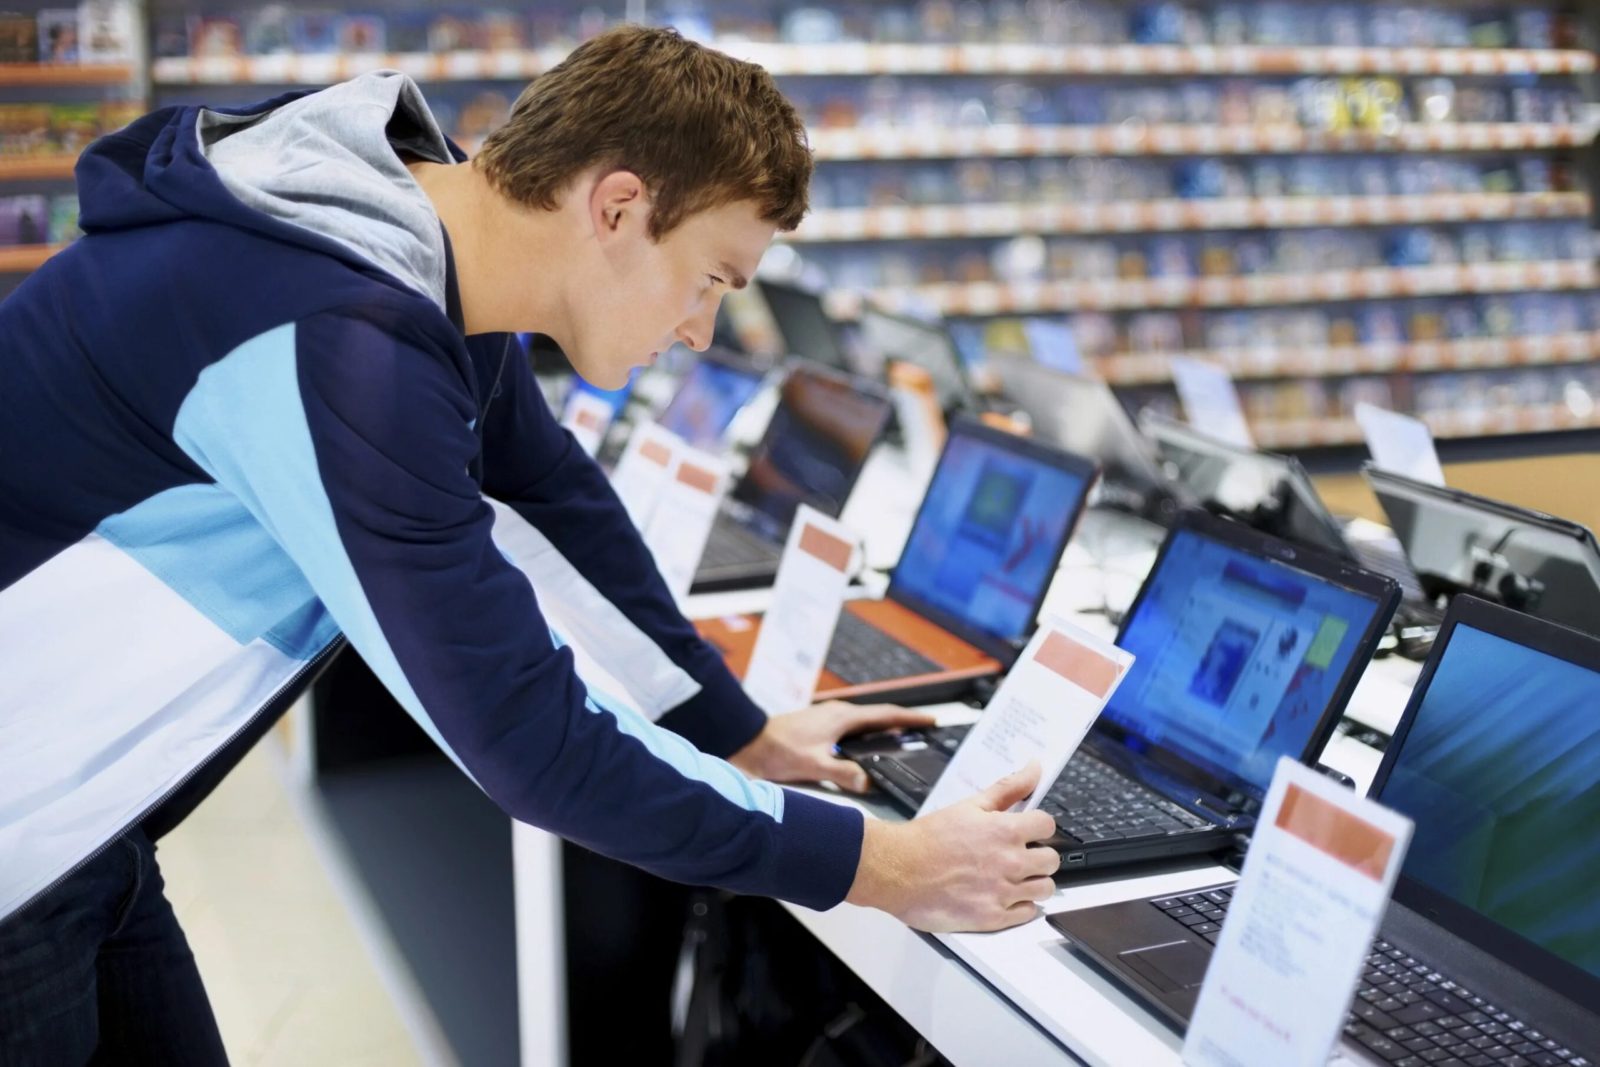 Реализация компьютерных технологии. Выбор компьютера в магазине. Компьютер ноутбук. Приобретение компьютерной техники. Компьютерный рынок.